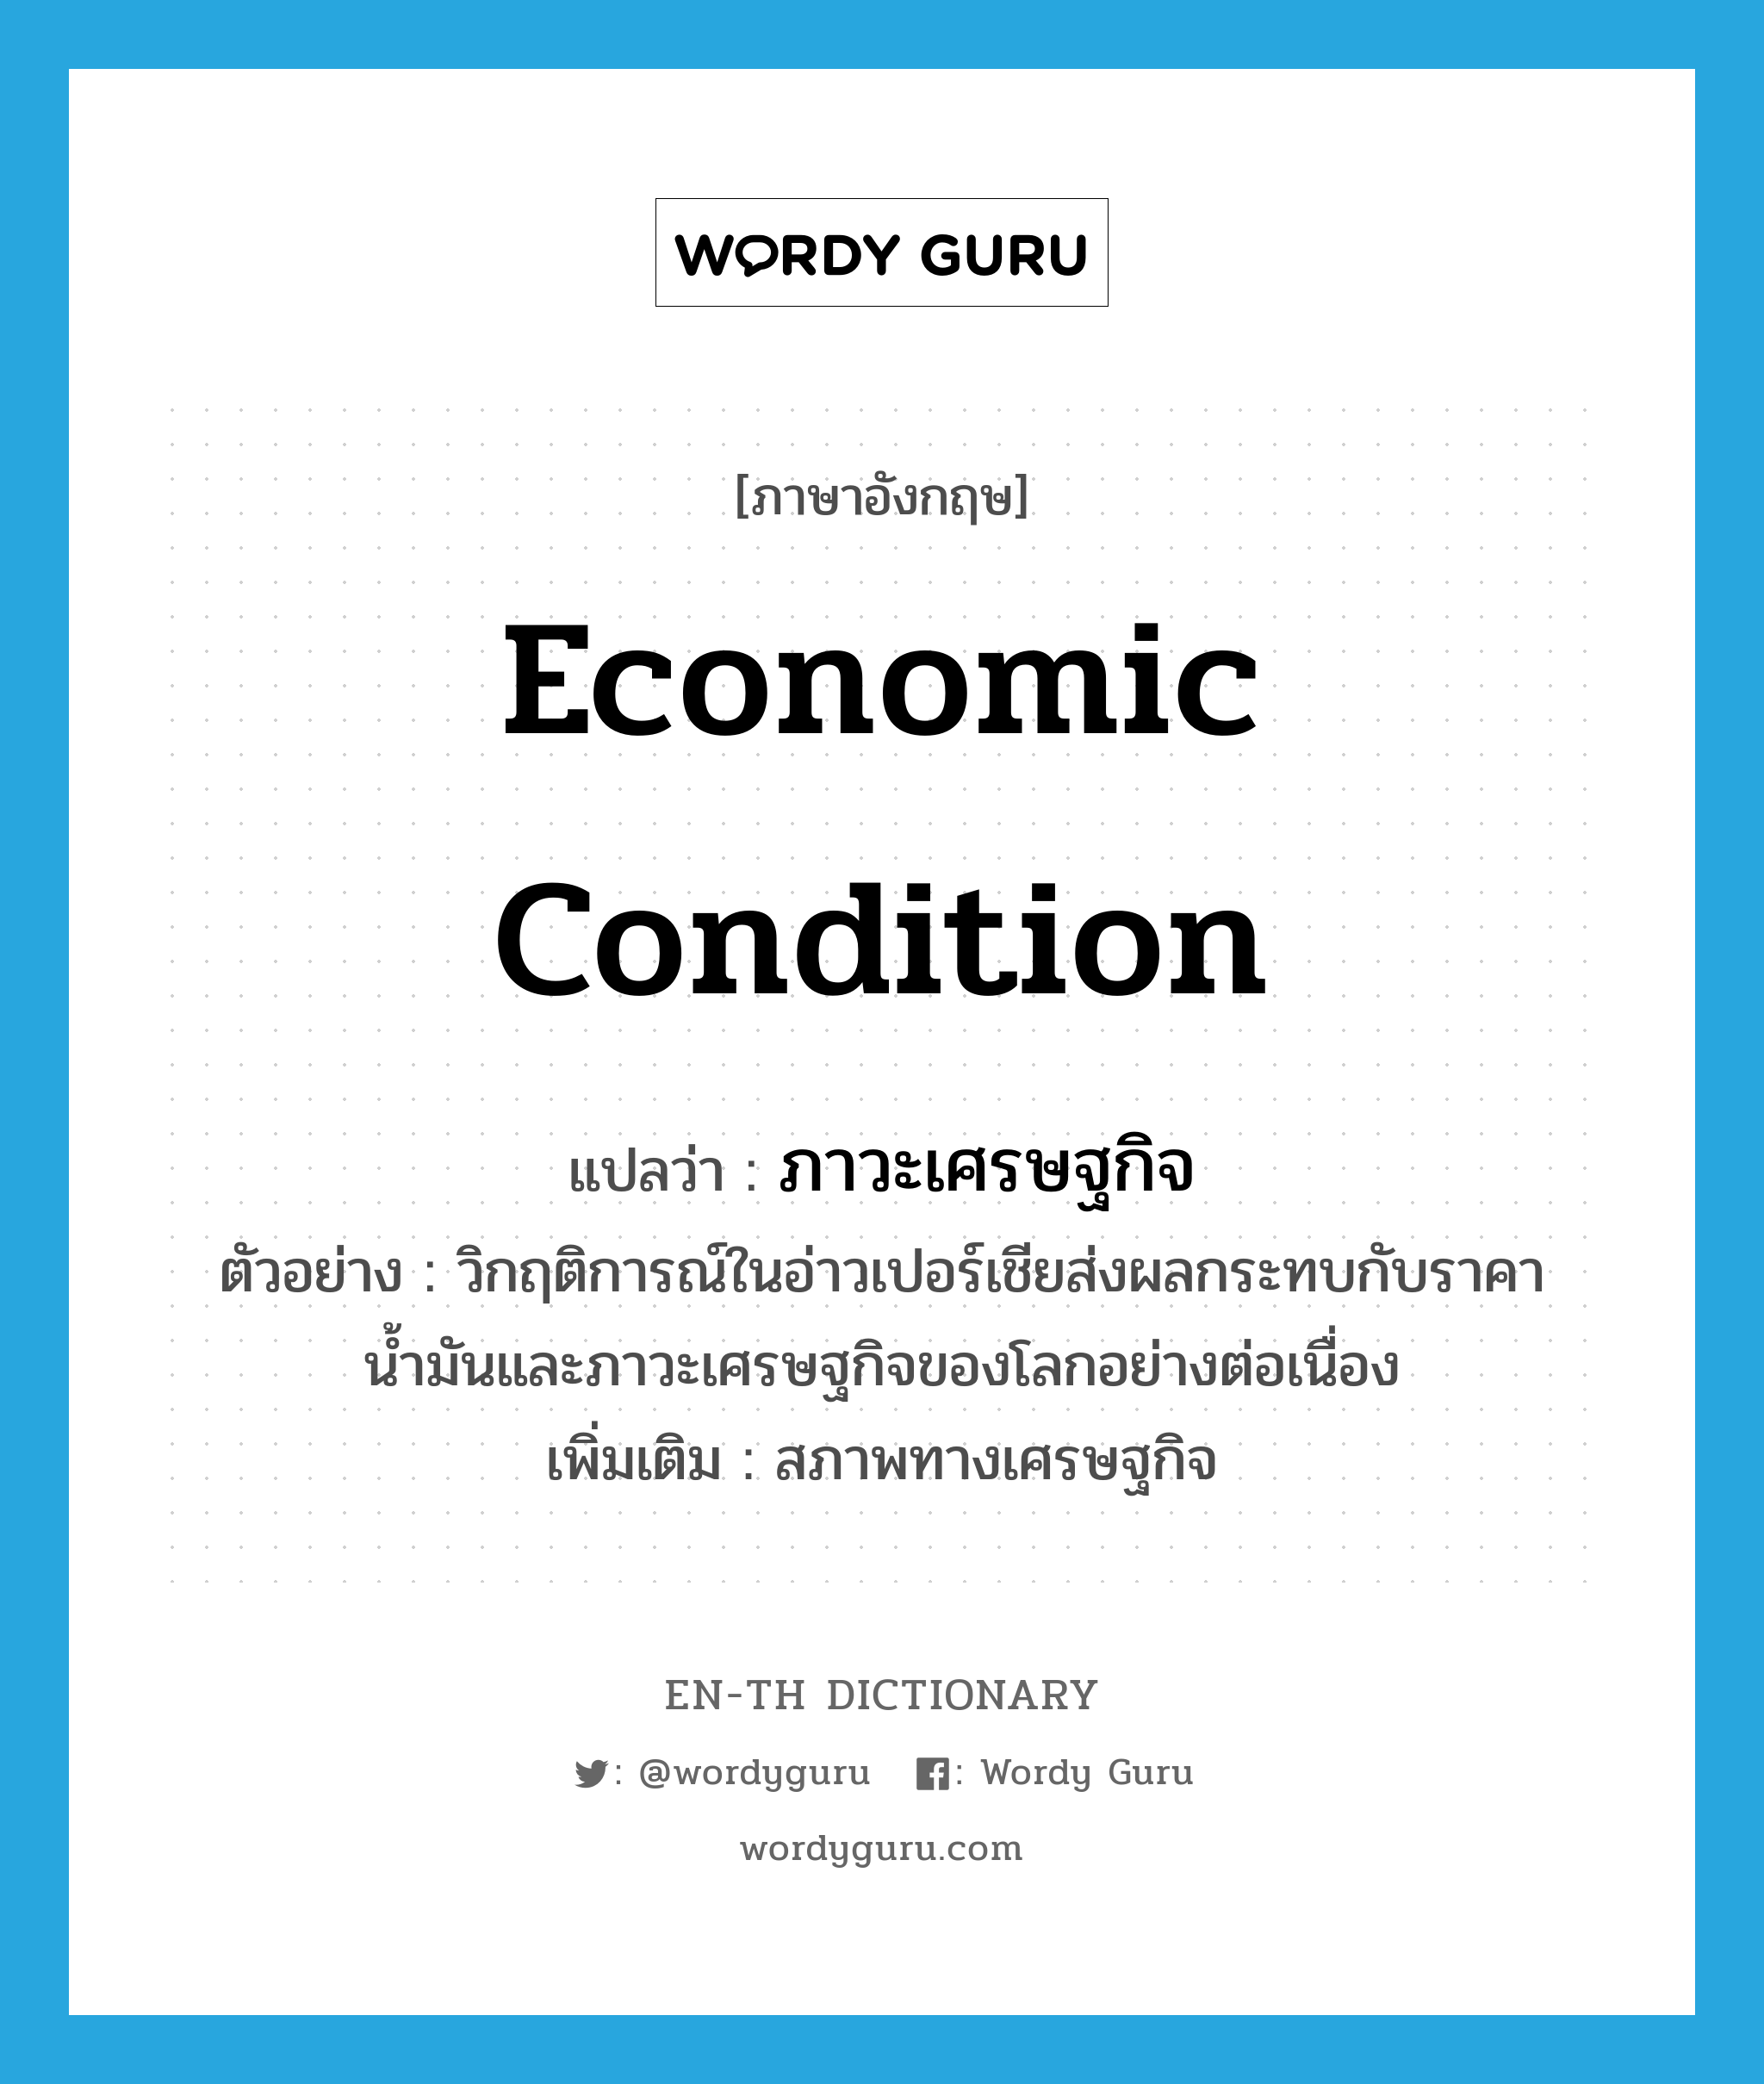 economic condition แปลว่า?, คำศัพท์ภาษาอังกฤษ economic condition แปลว่า ภาวะเศรษฐกิจ ประเภท N ตัวอย่าง วิกฤติการณ์ในอ่าวเปอร์เชียส่งผลกระทบกับราคาน้ำมันและภาวะเศรษฐกิจของโลกอย่างต่อเนื่อง เพิ่มเติม สภาพทางเศรษฐกิจ หมวด N